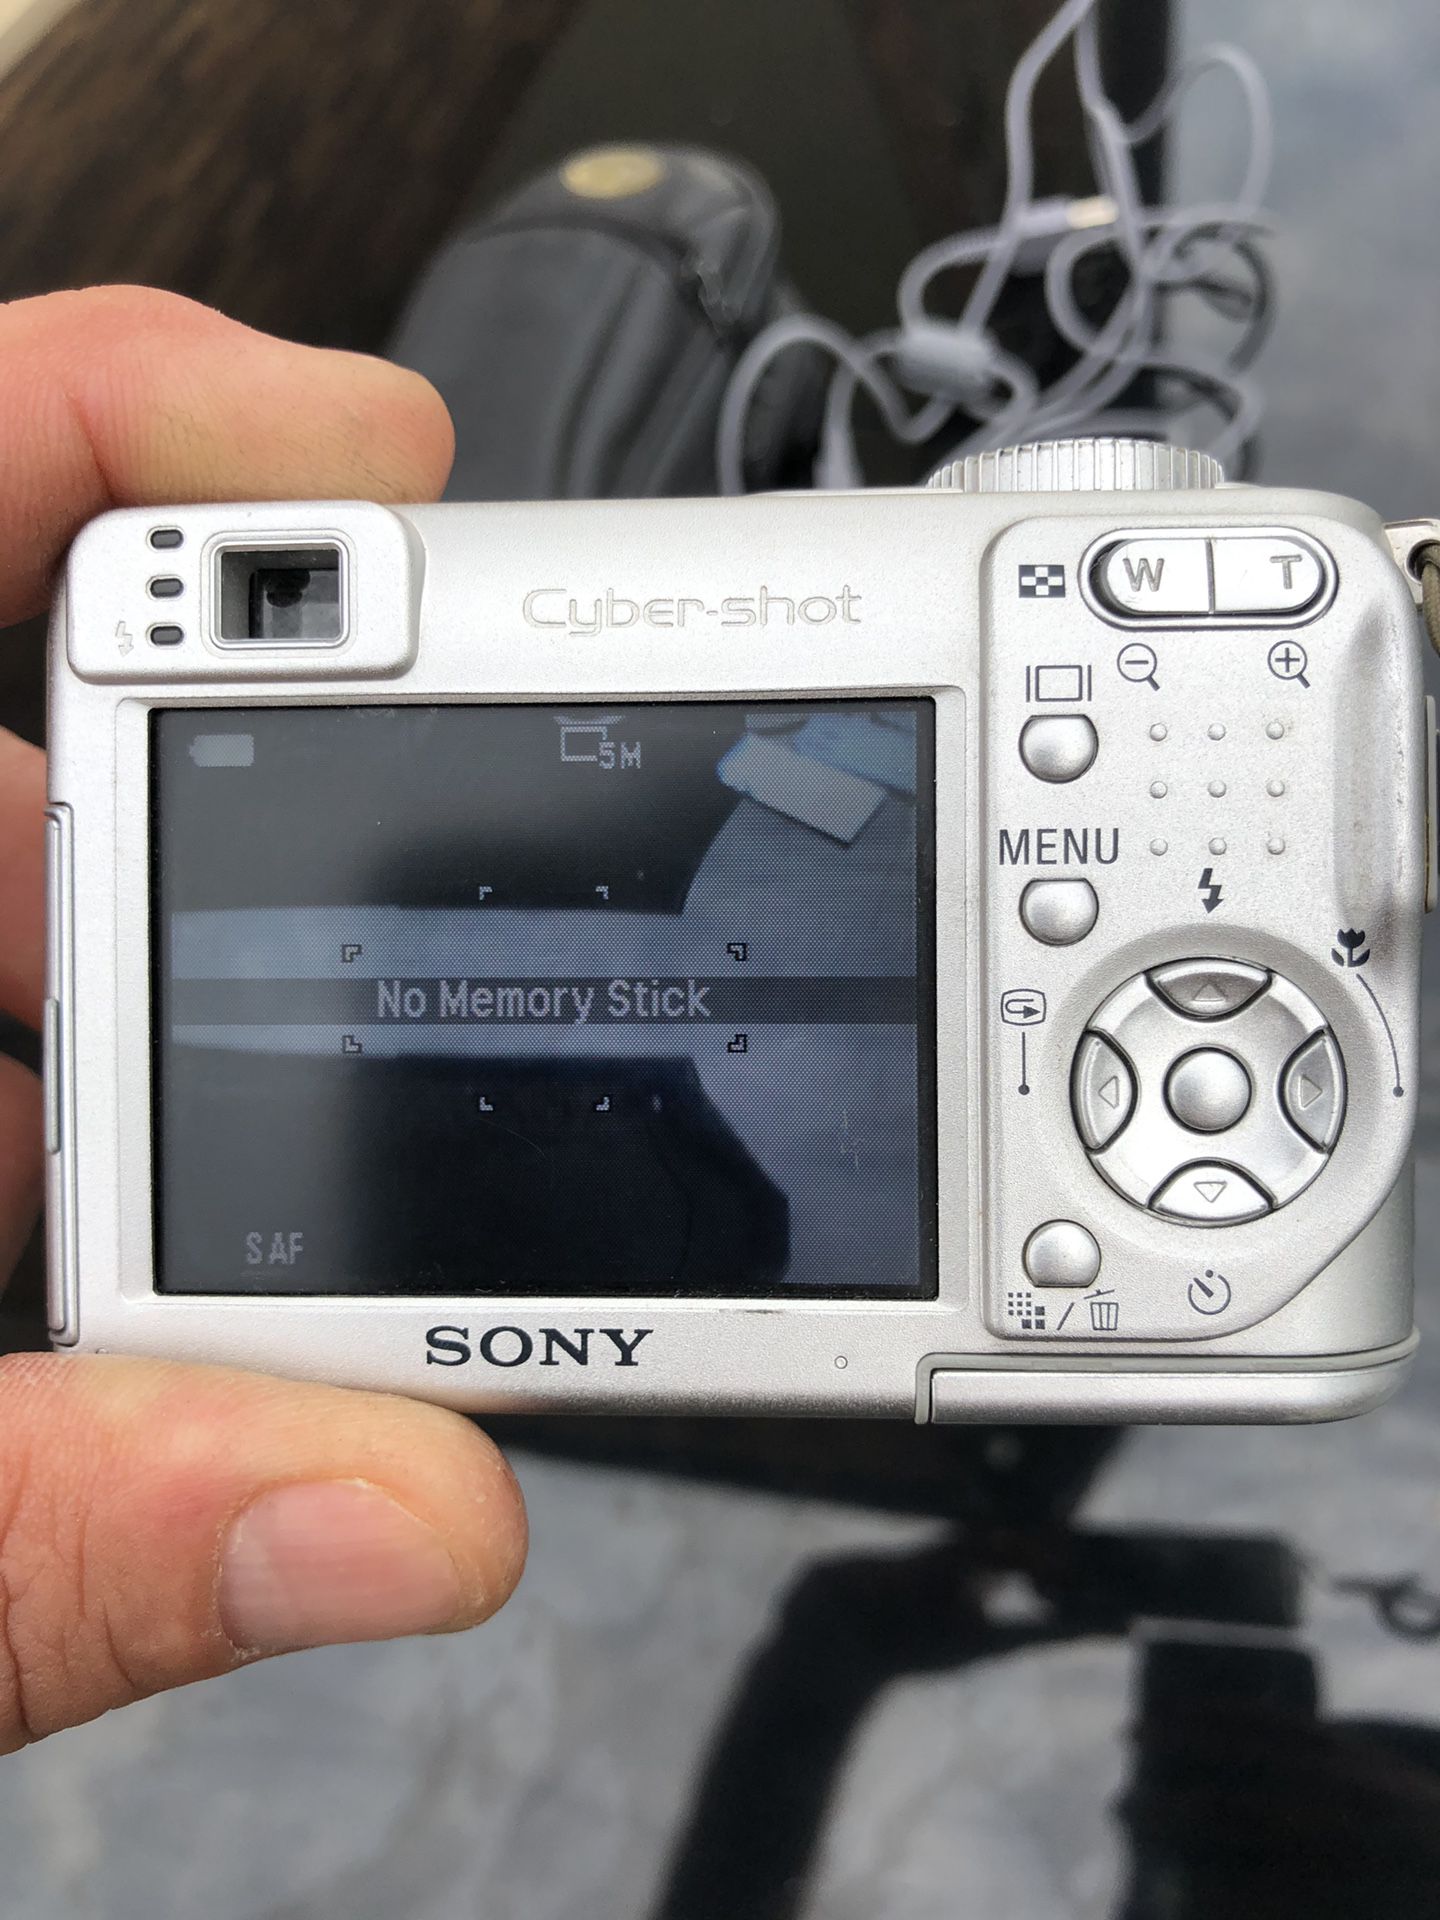 Sony Digital Camera 5.1 megapixels